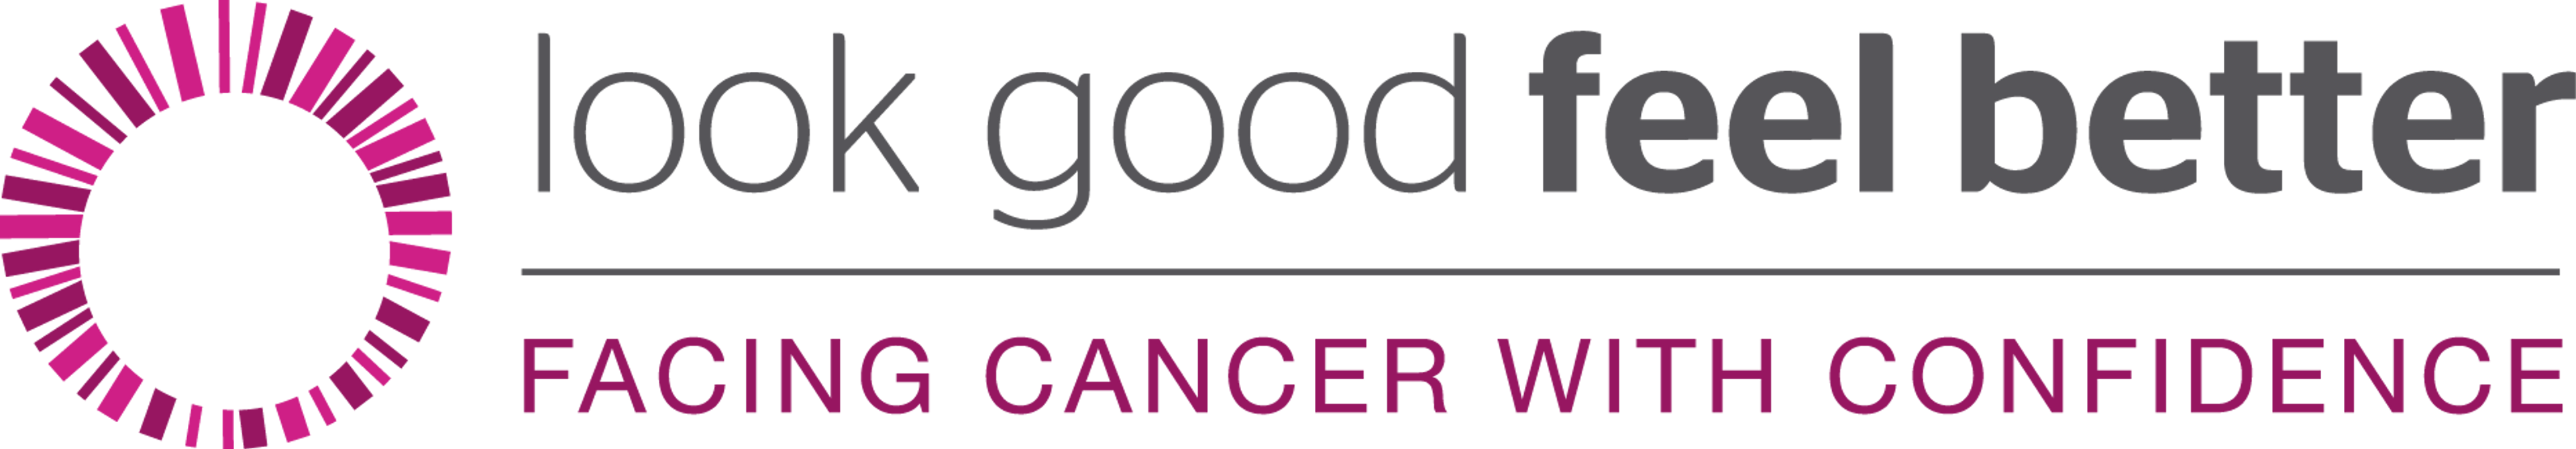 Look Good Feel Better's logo